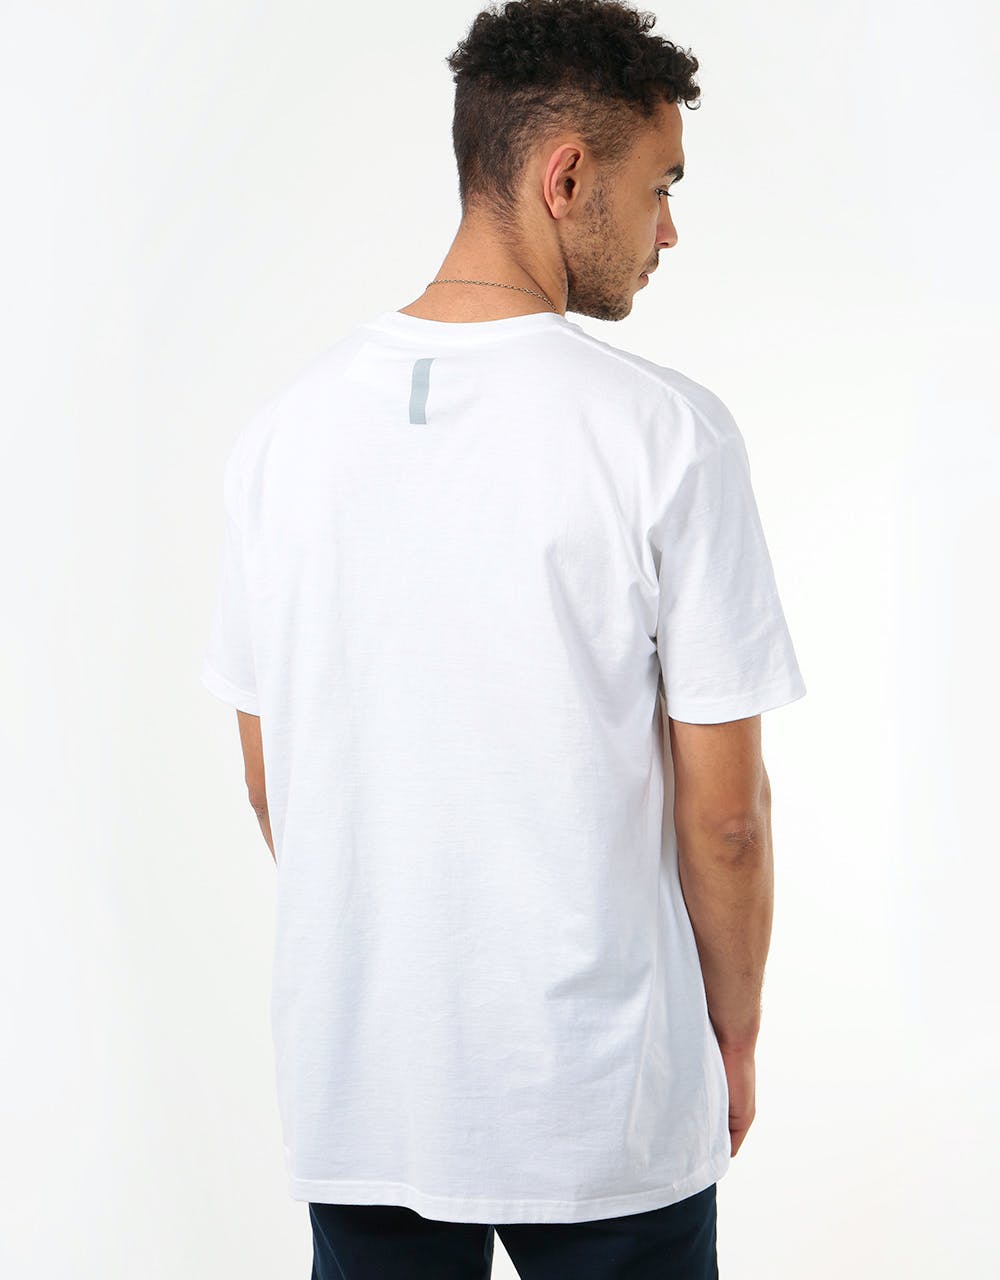 Vans Pro Skate Reflective T-Shirt - White